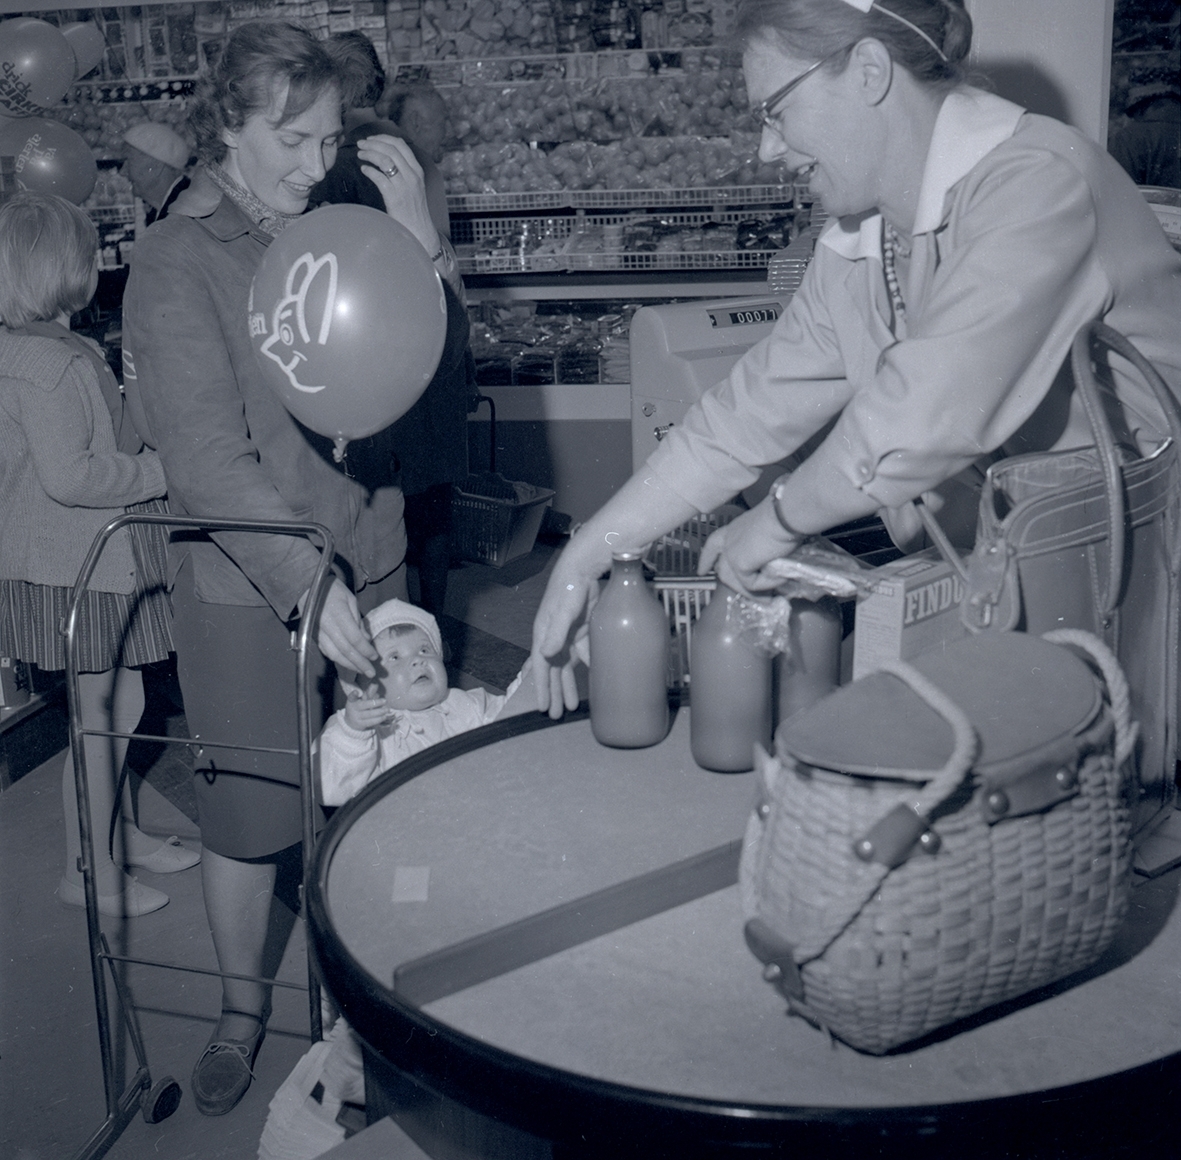 Bild tagen i samband med invigning av Konsum. Två kvinnor och ett barn som håller i en ballong.